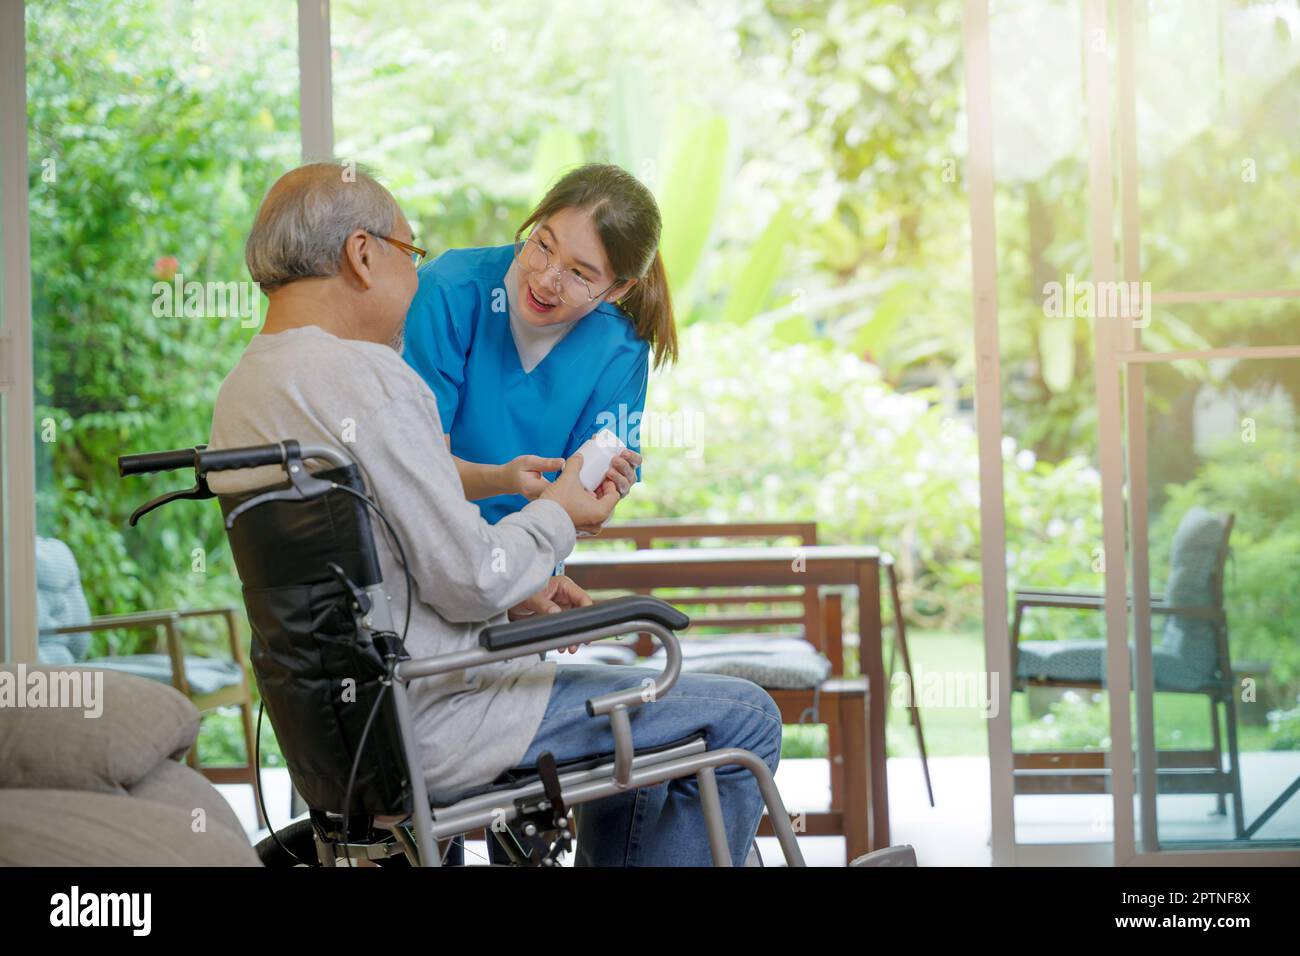 Les pilules d'infirmière de jeune femme asiatique avec l'aide prescrit des médicaments aux patients handicapés plus âgés sur fauteuil roulant lorsque le patient d'homme âgé a le temps de rentrer à la maison Banque D'Images